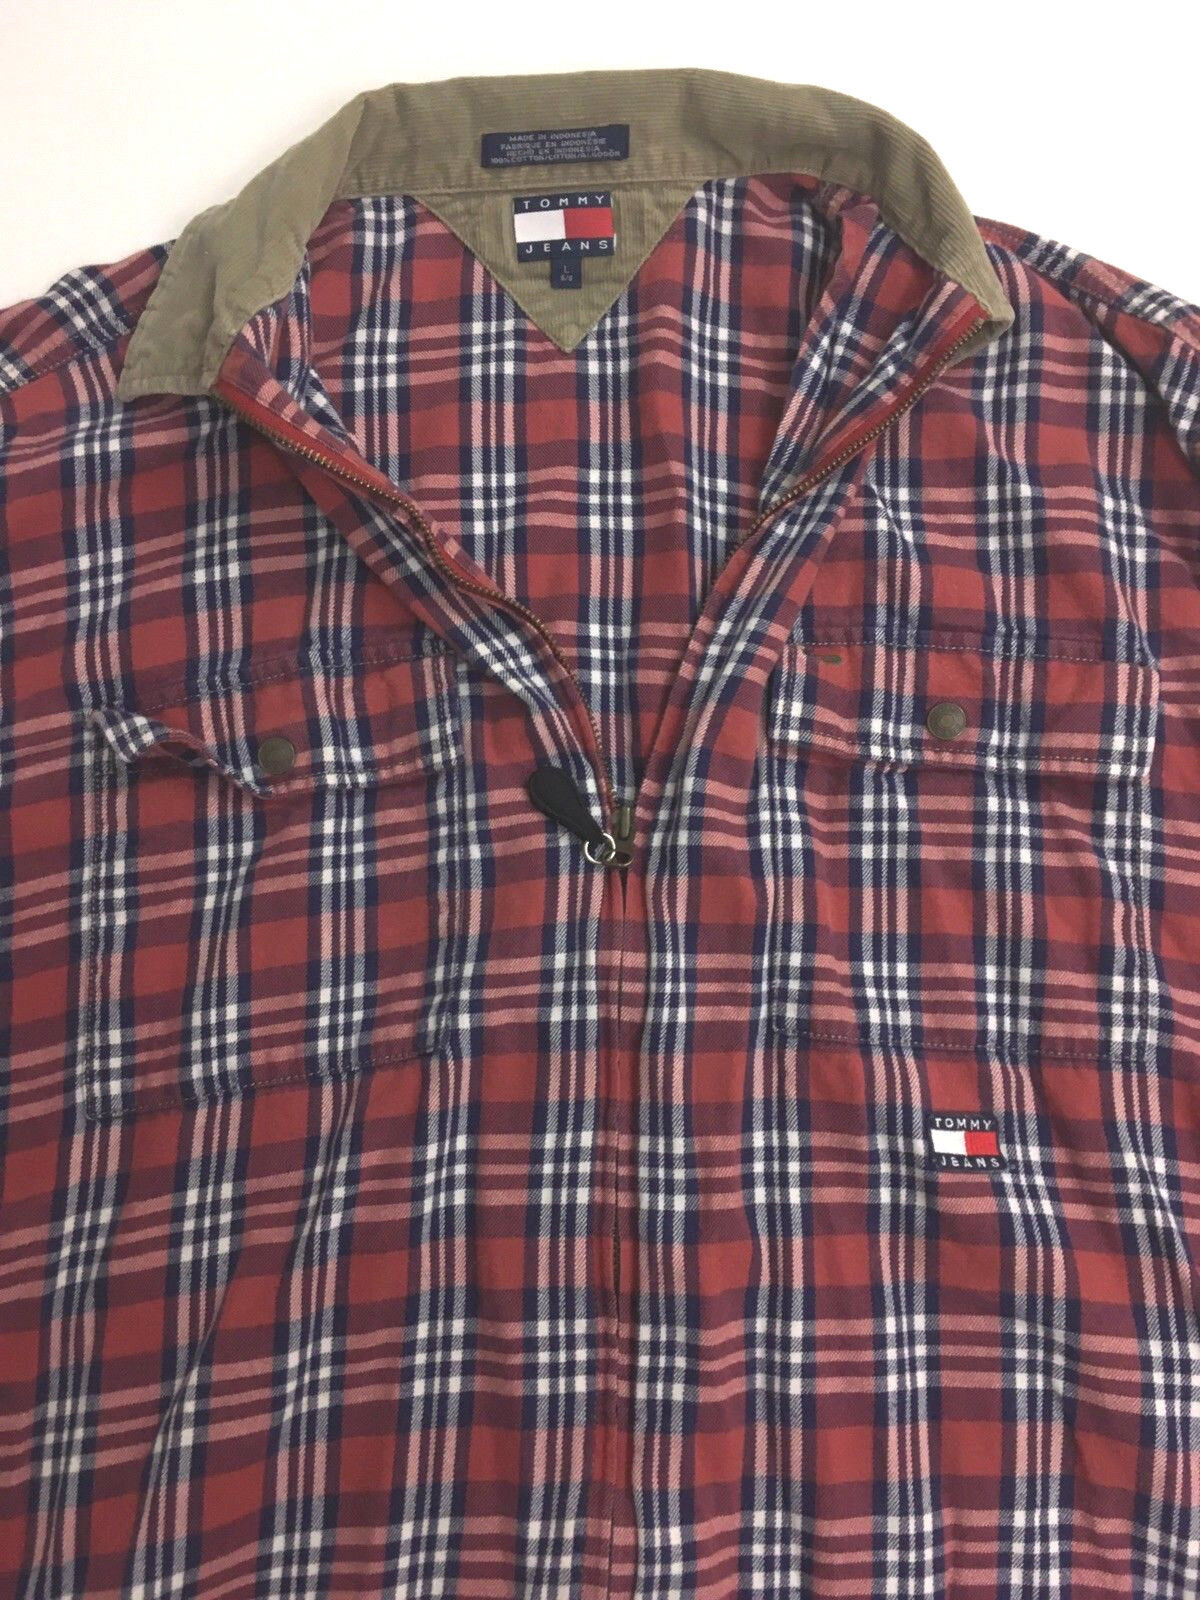 Vintage Tommy Hilfiger Men's Shirt Full Zip Jacke… - image 5